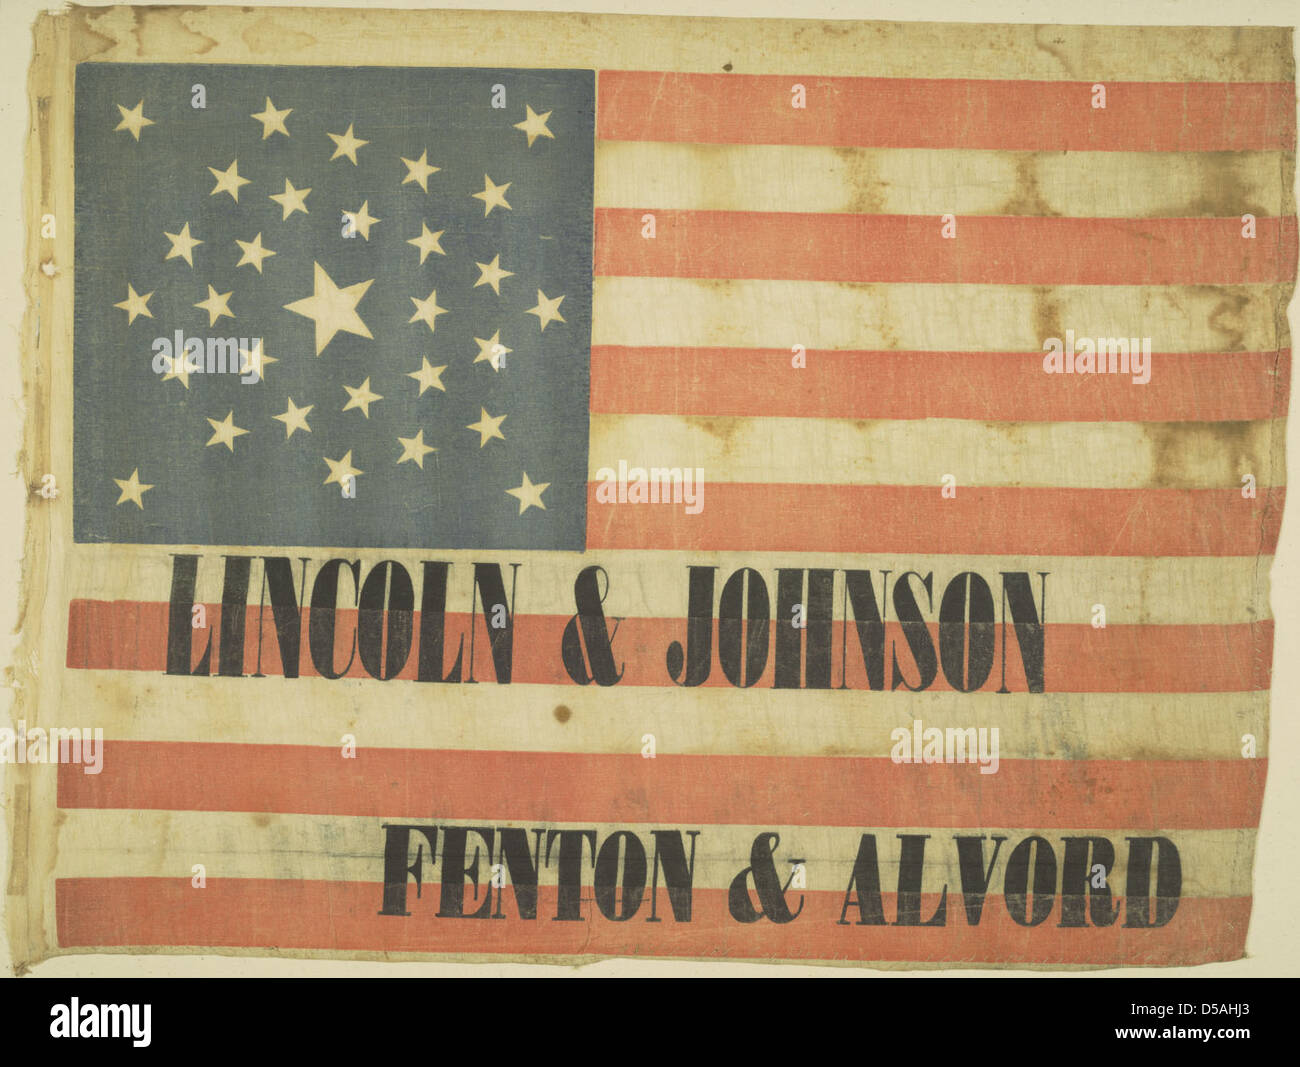 Lincoln & Johnson / Fenton & Alvord Textile, ca. 1864 Stock Photo